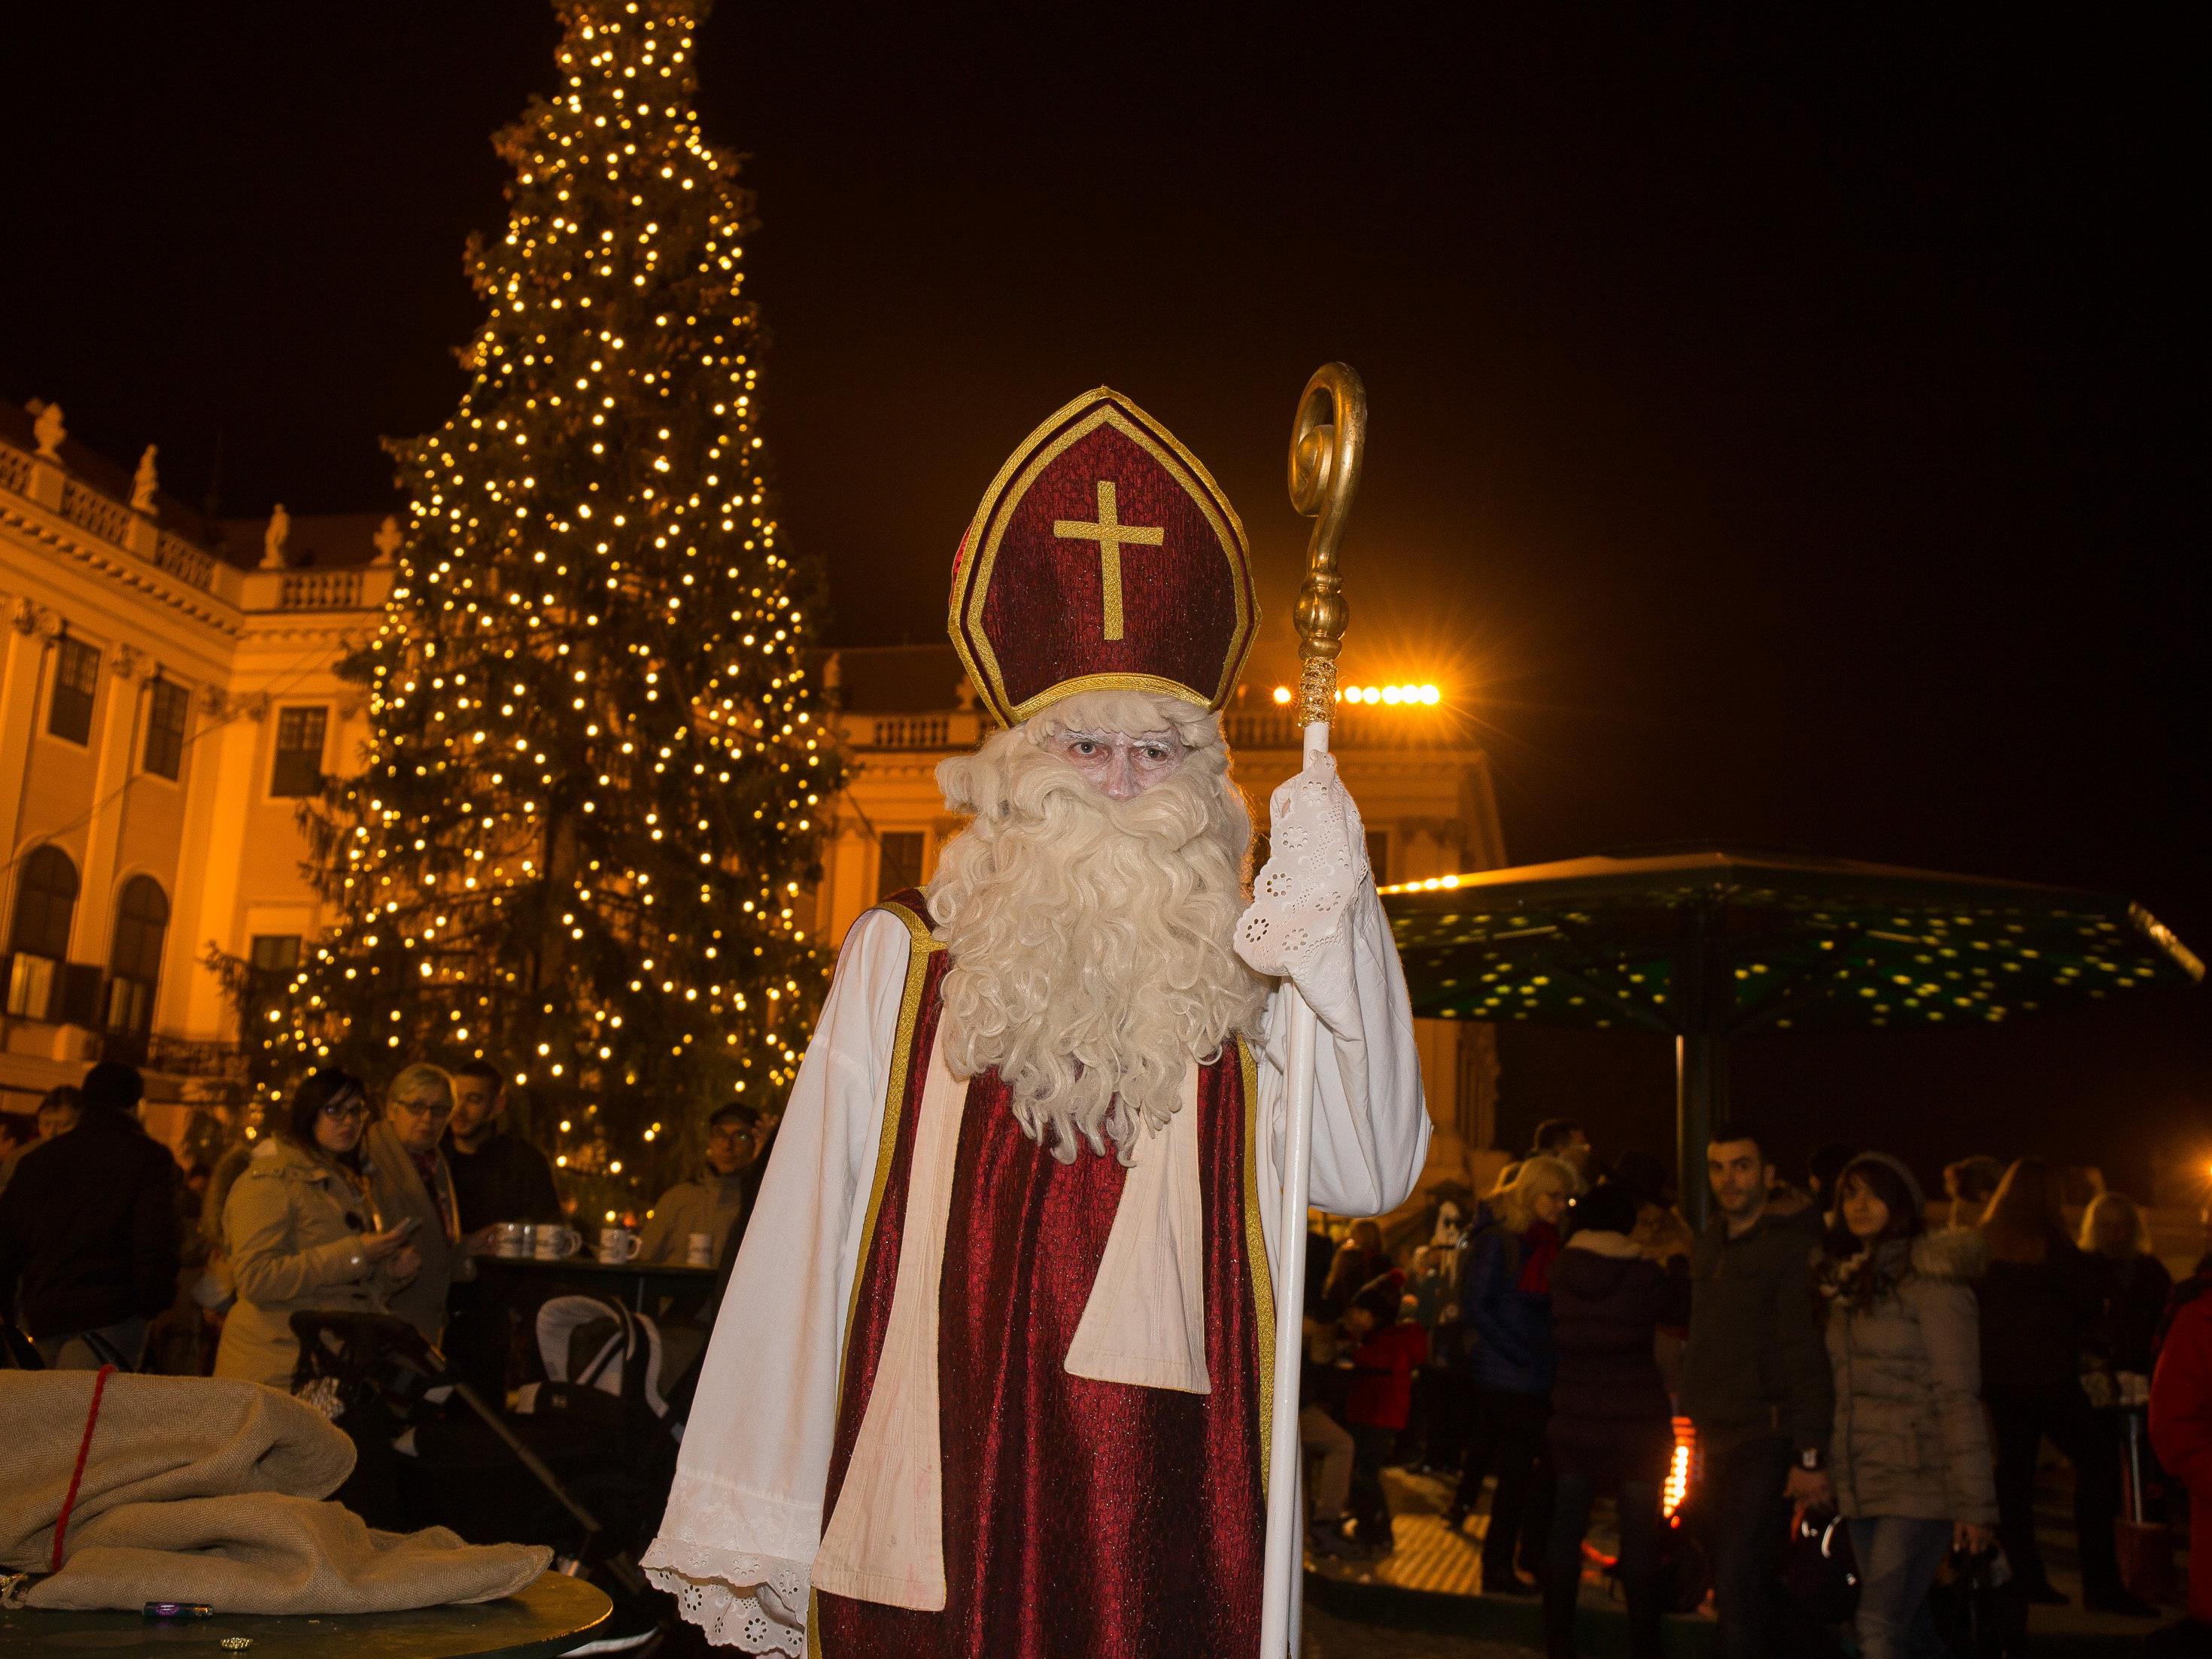 Der Nikolaus kommt am 5. und 6. Dezember zum Weihnachtsmarkt Schloss Schönbrunn